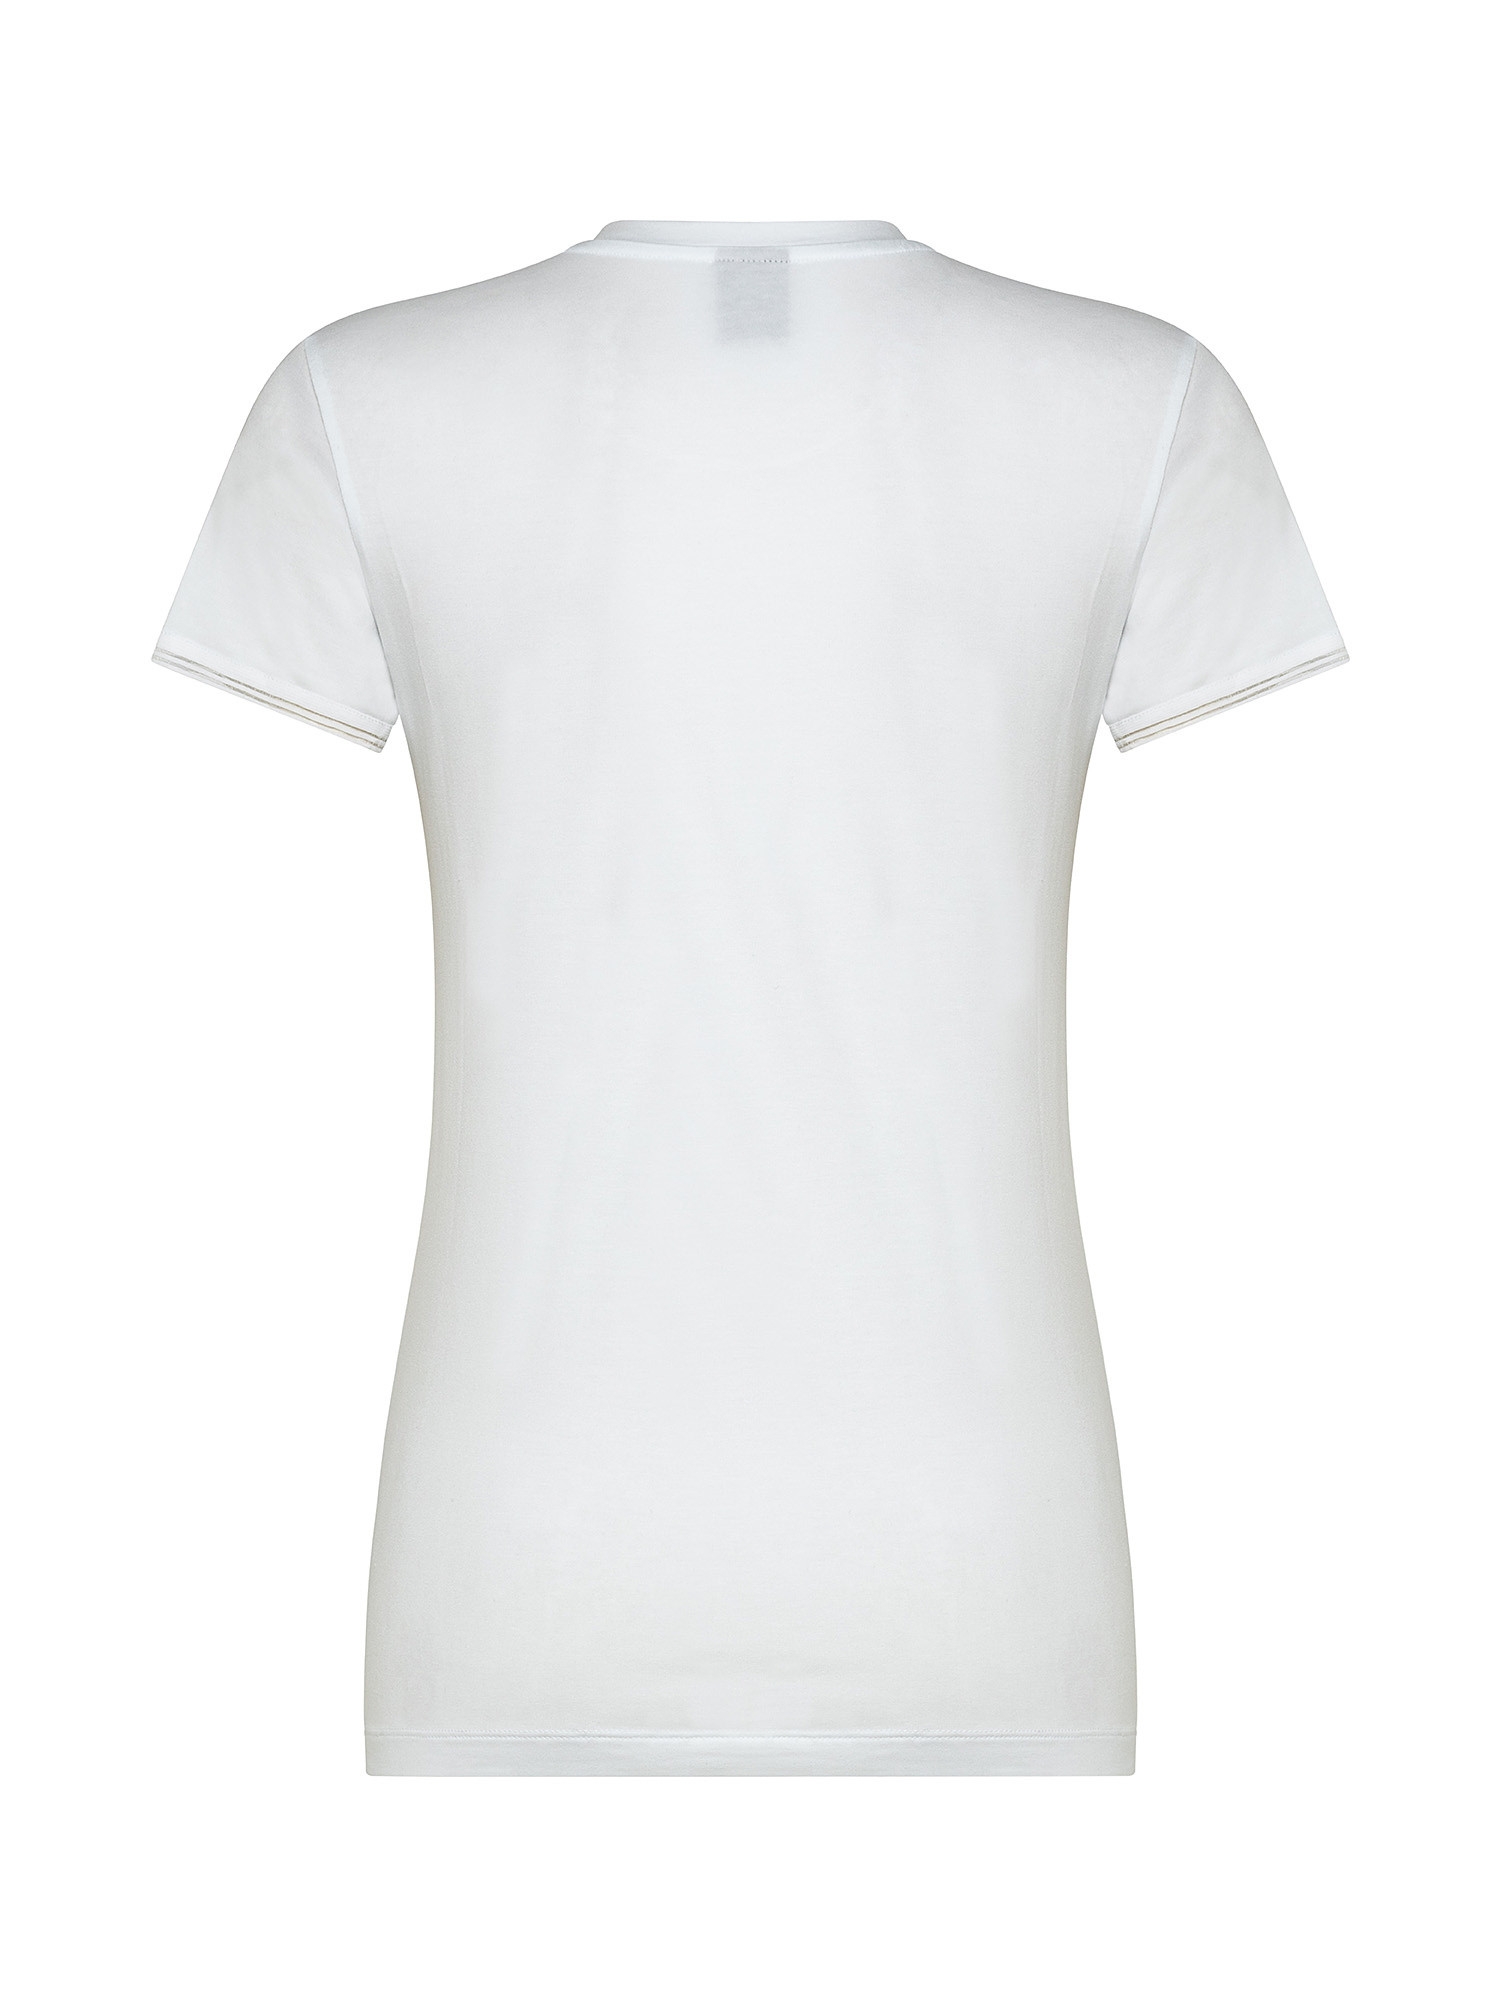 Short sleeve T-shirt, White, large image number 1